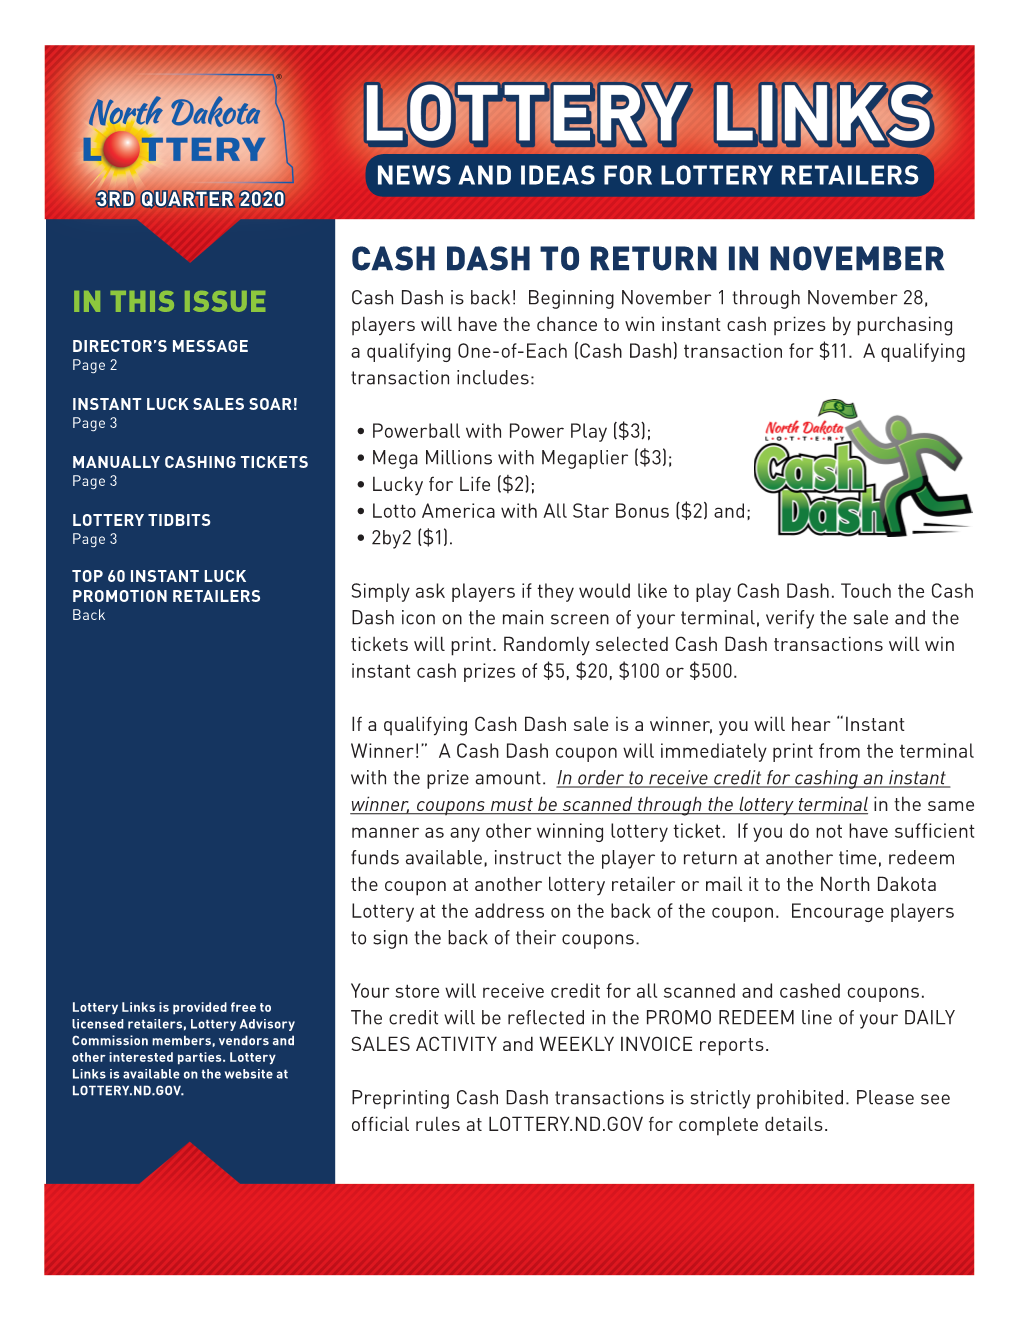 Cash Dash to Return in November